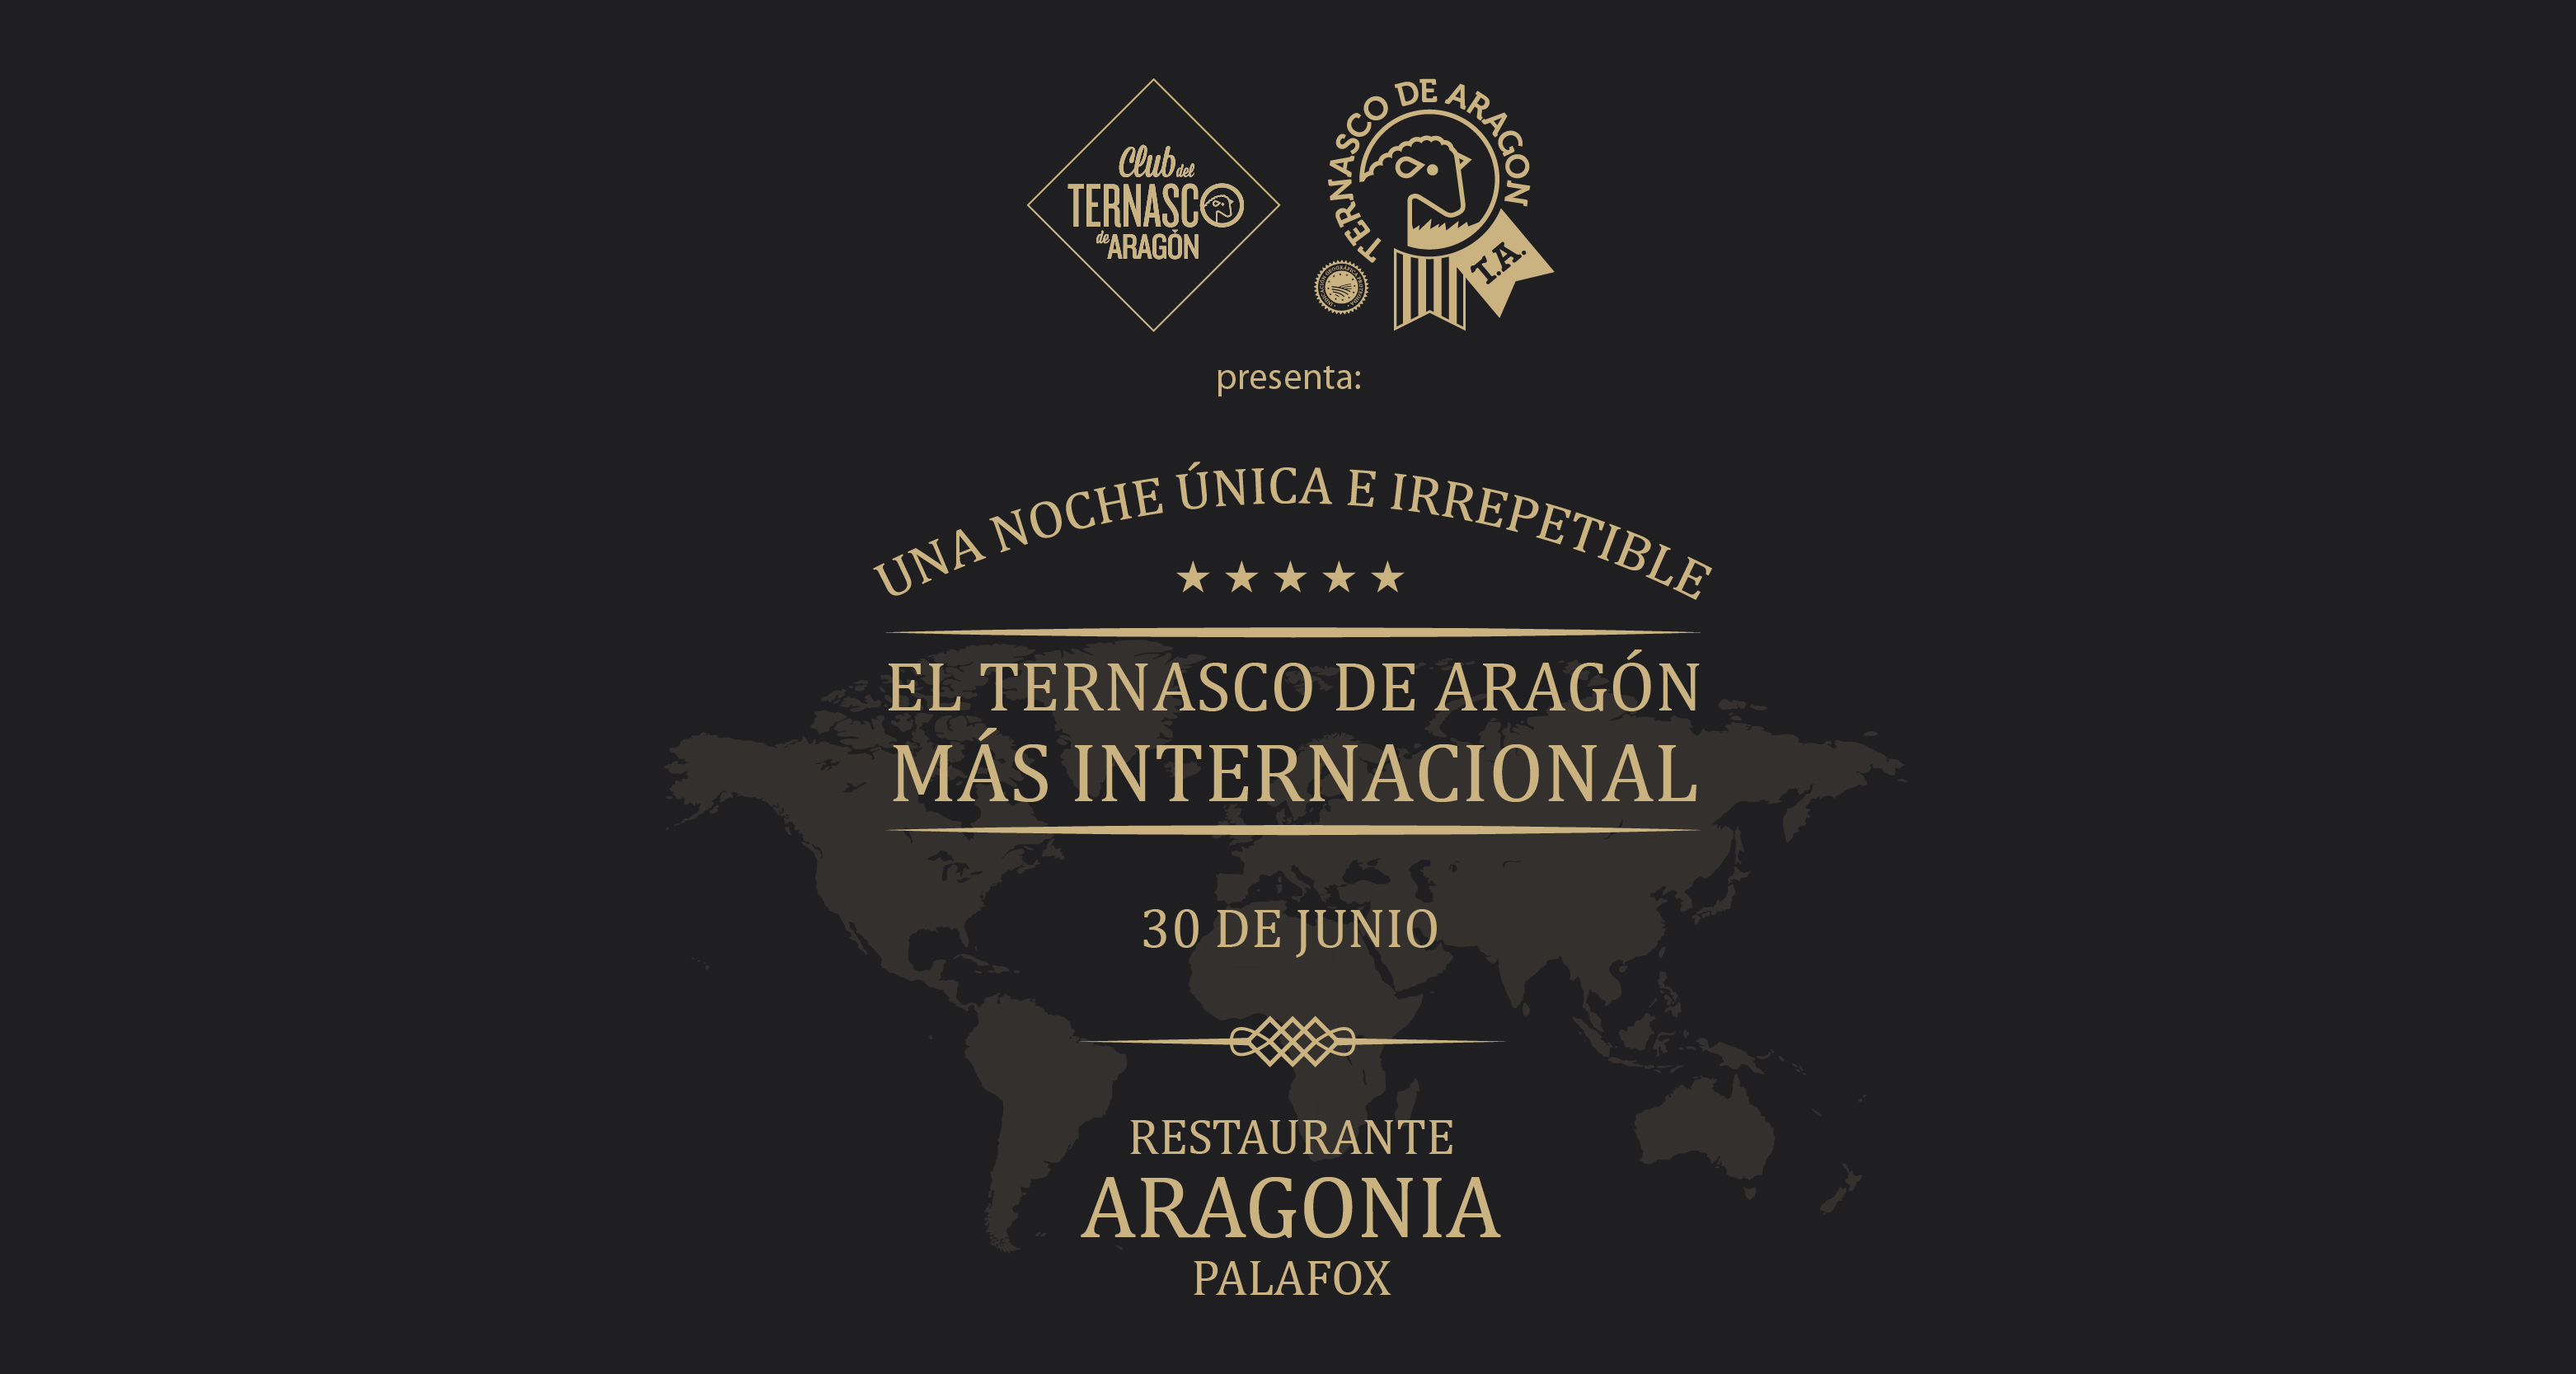 El Ternasco de Aragón más internacional